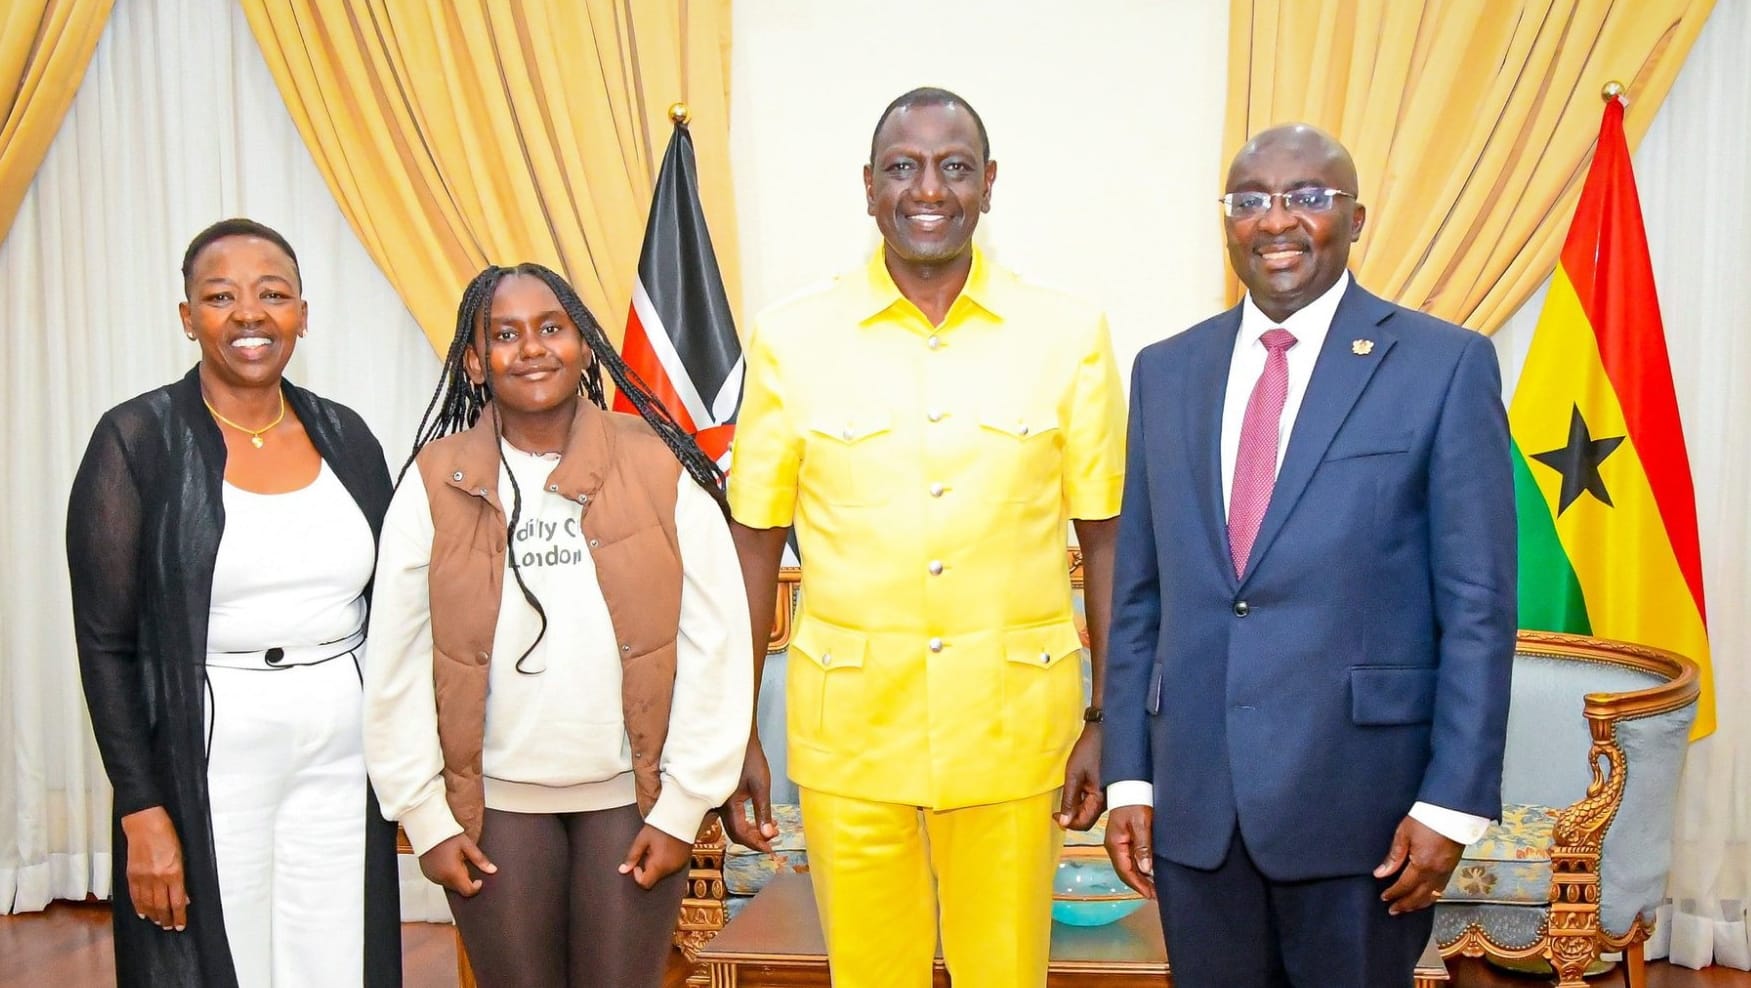 Meet President Ruto's Adopted Daughter - Nadia Cherono